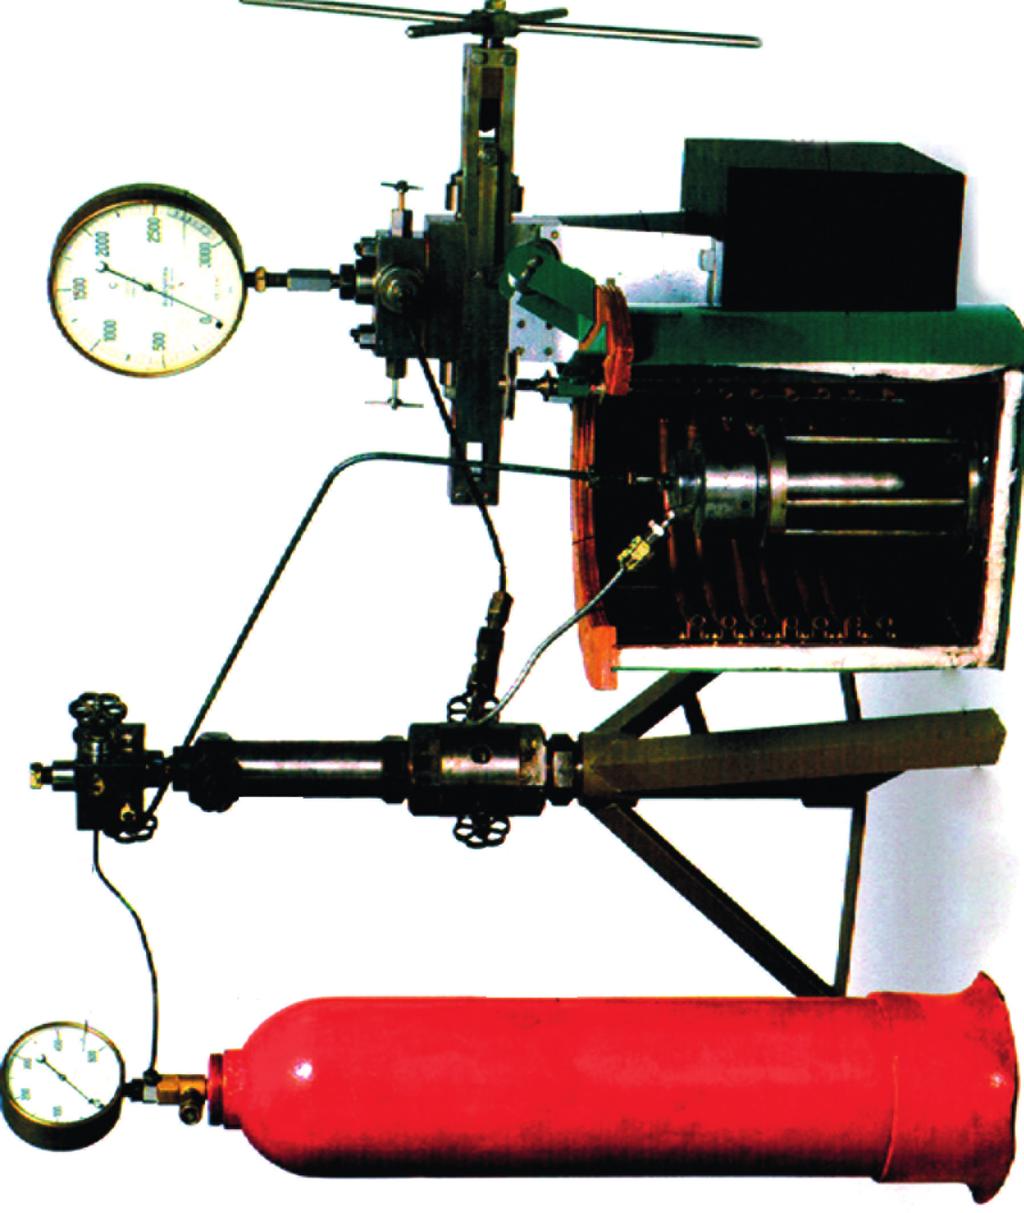 Μανόμετρο Οβίδια αιθυλενίου Συμπιεστής Μόνωση Μανόμετρο Δοχείο πίεσης Σπείρες θέρμανσης Η ιστορική διάταξη του πειράματος για την παρασκευή του πολυαιθυλενίου το 1933 από τους Gibson και Fawcett σε